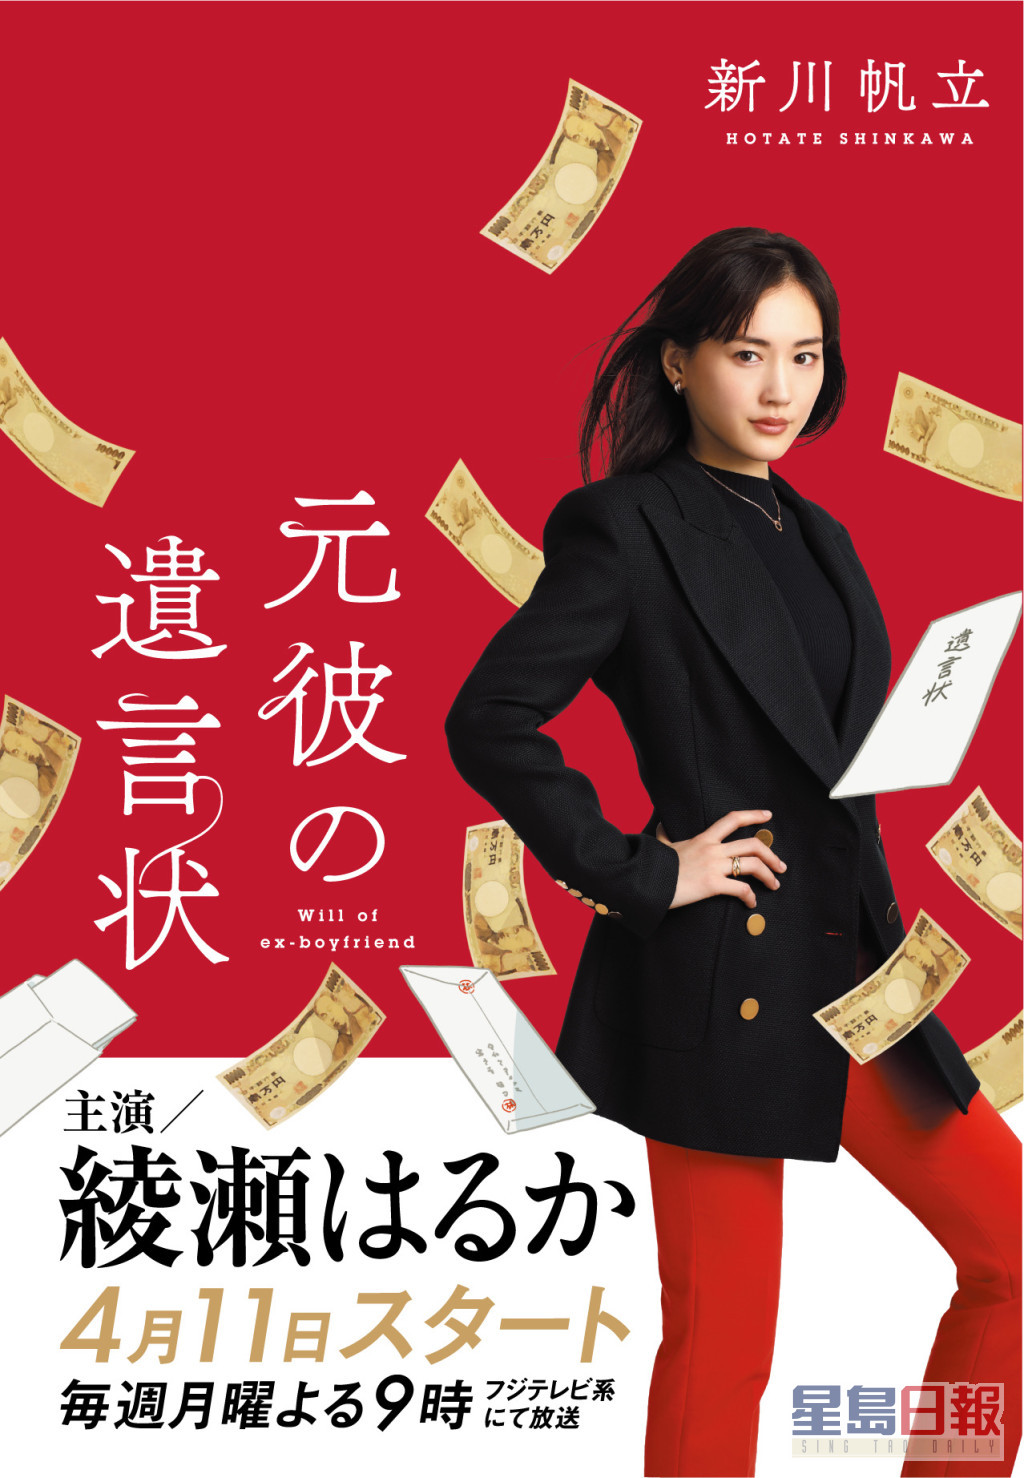 綾瀨遙飾演優秀律師劍持麗子。